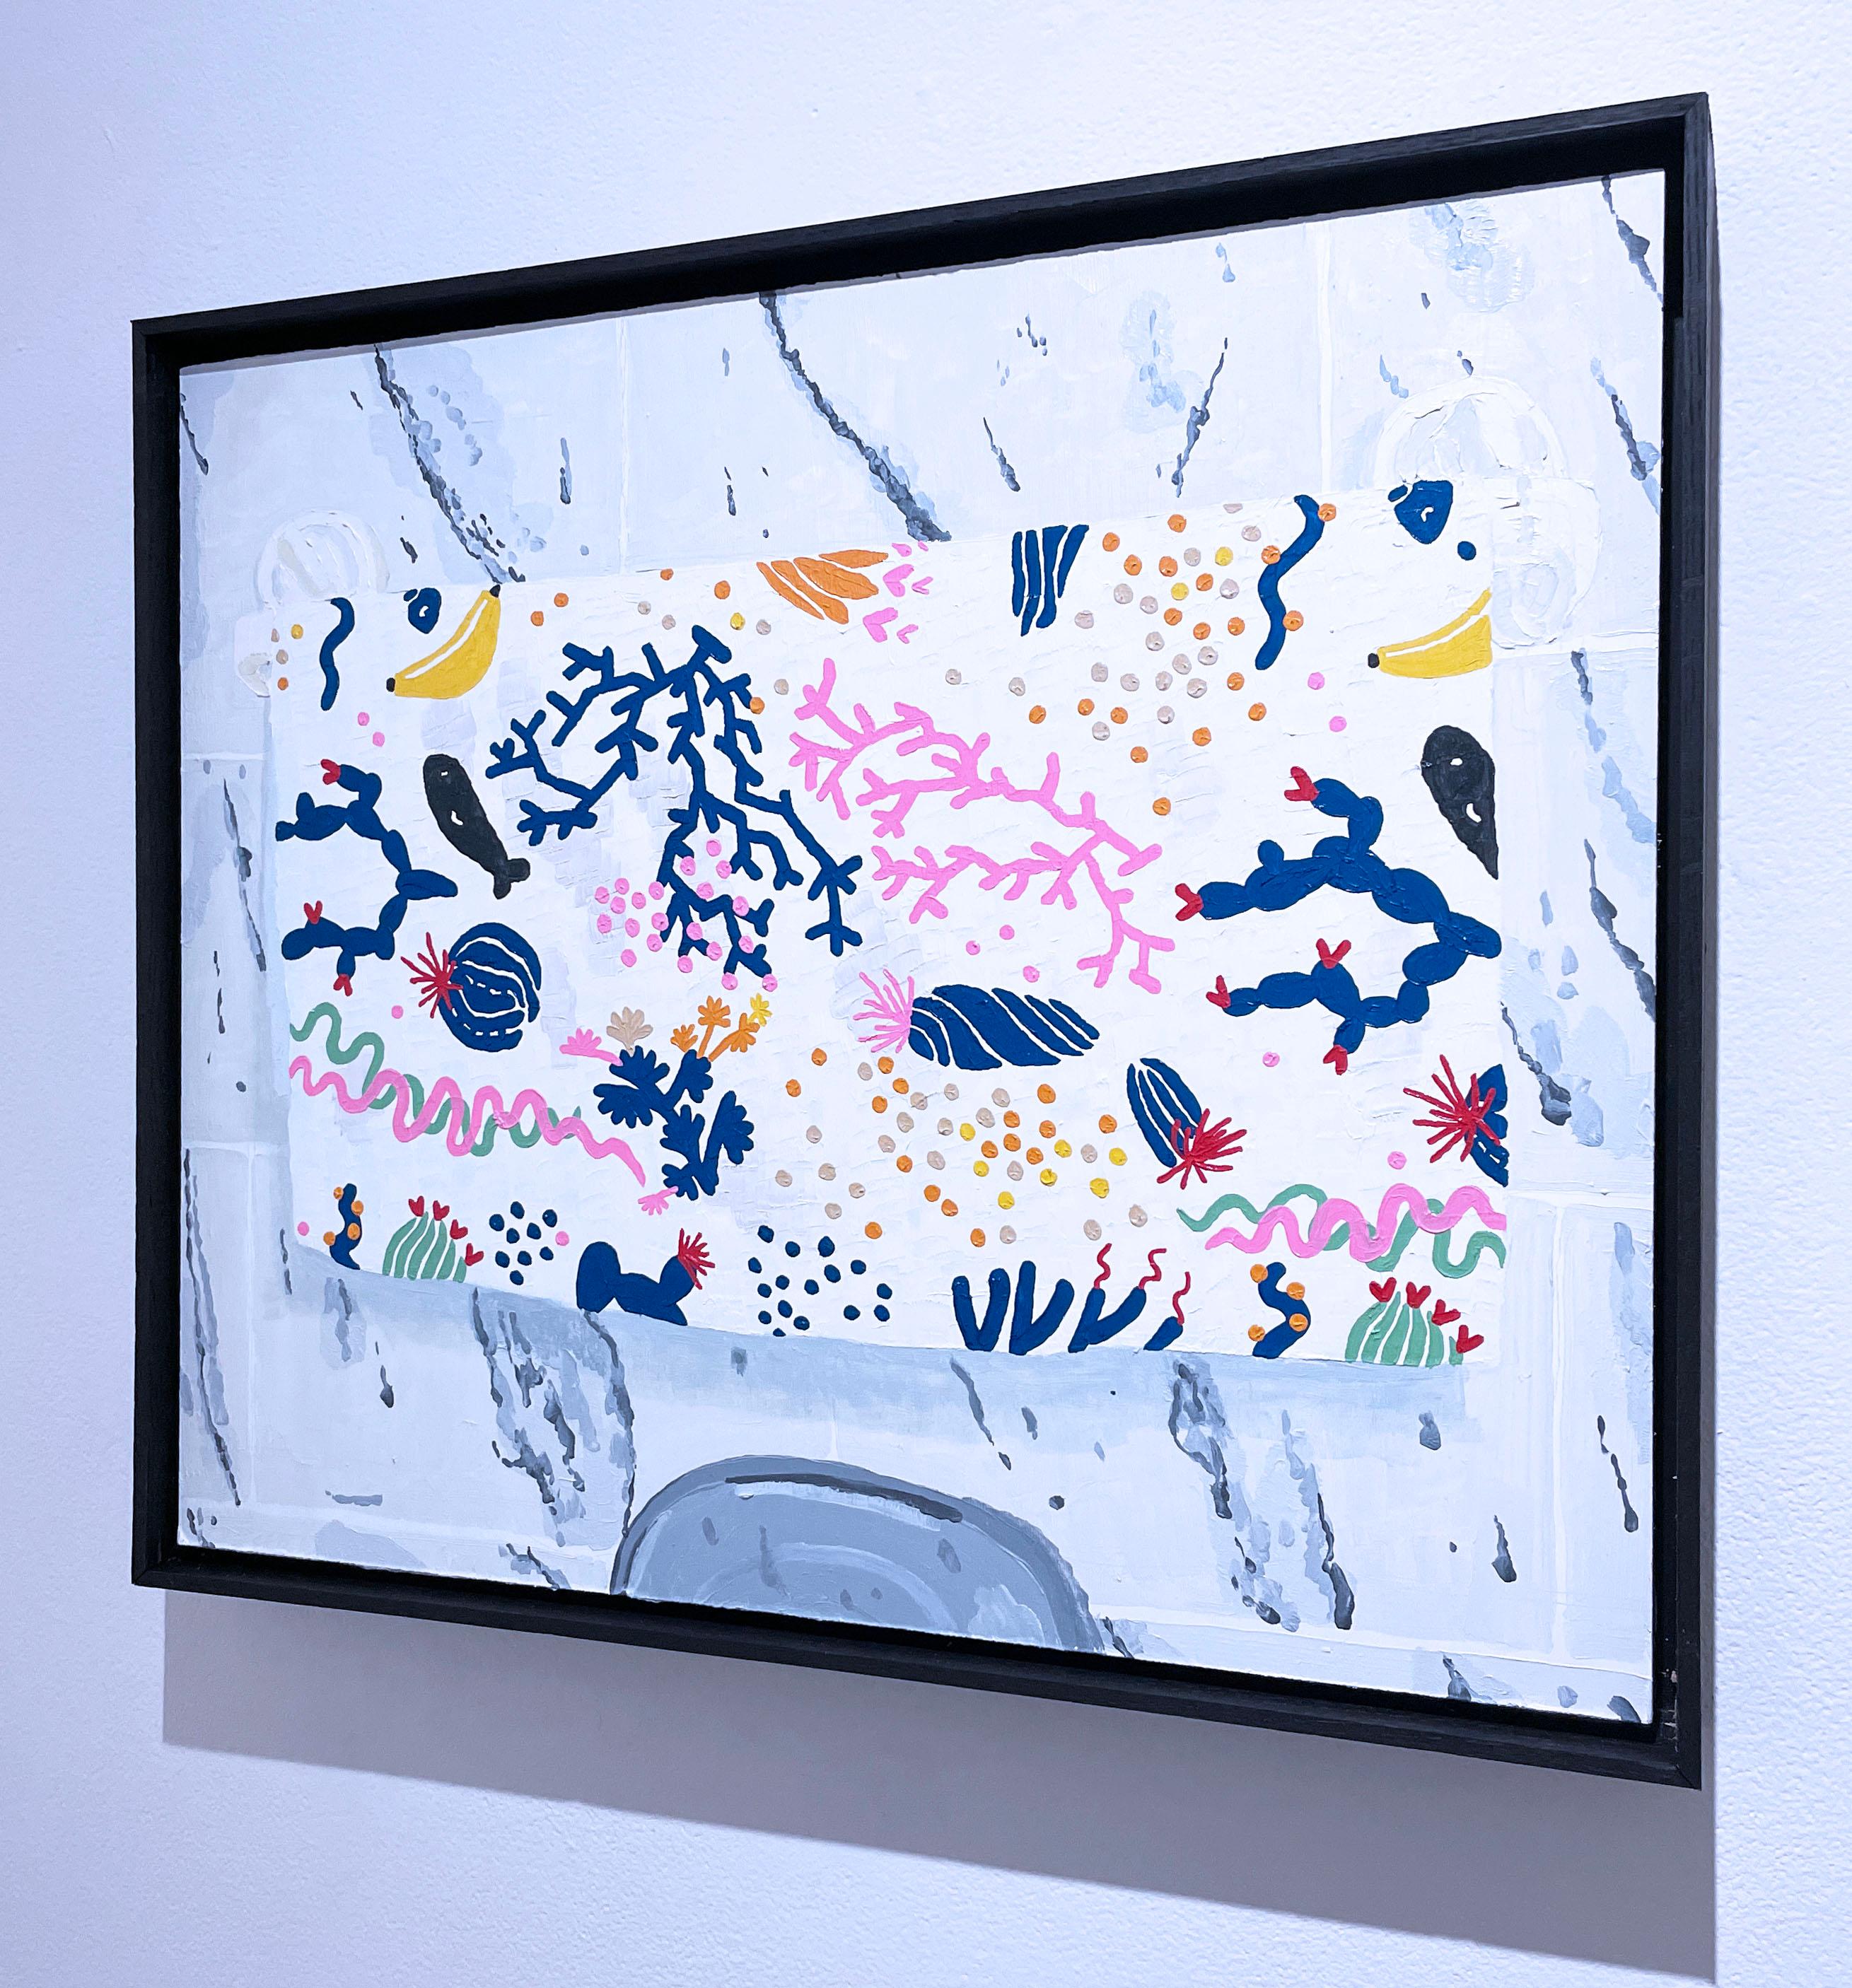 IKEA (2022), Öl auf Holztafel, Gemälde von Max Vesuvius Budnick, Korallenriff und Banane, helles Muster, Faux Naif

Klassisches Ölgemälde von Max Vesuvius Budnick für die Inneneinrichtung.  Der Künstler kann nicht widerstehen, ein ansprechendes